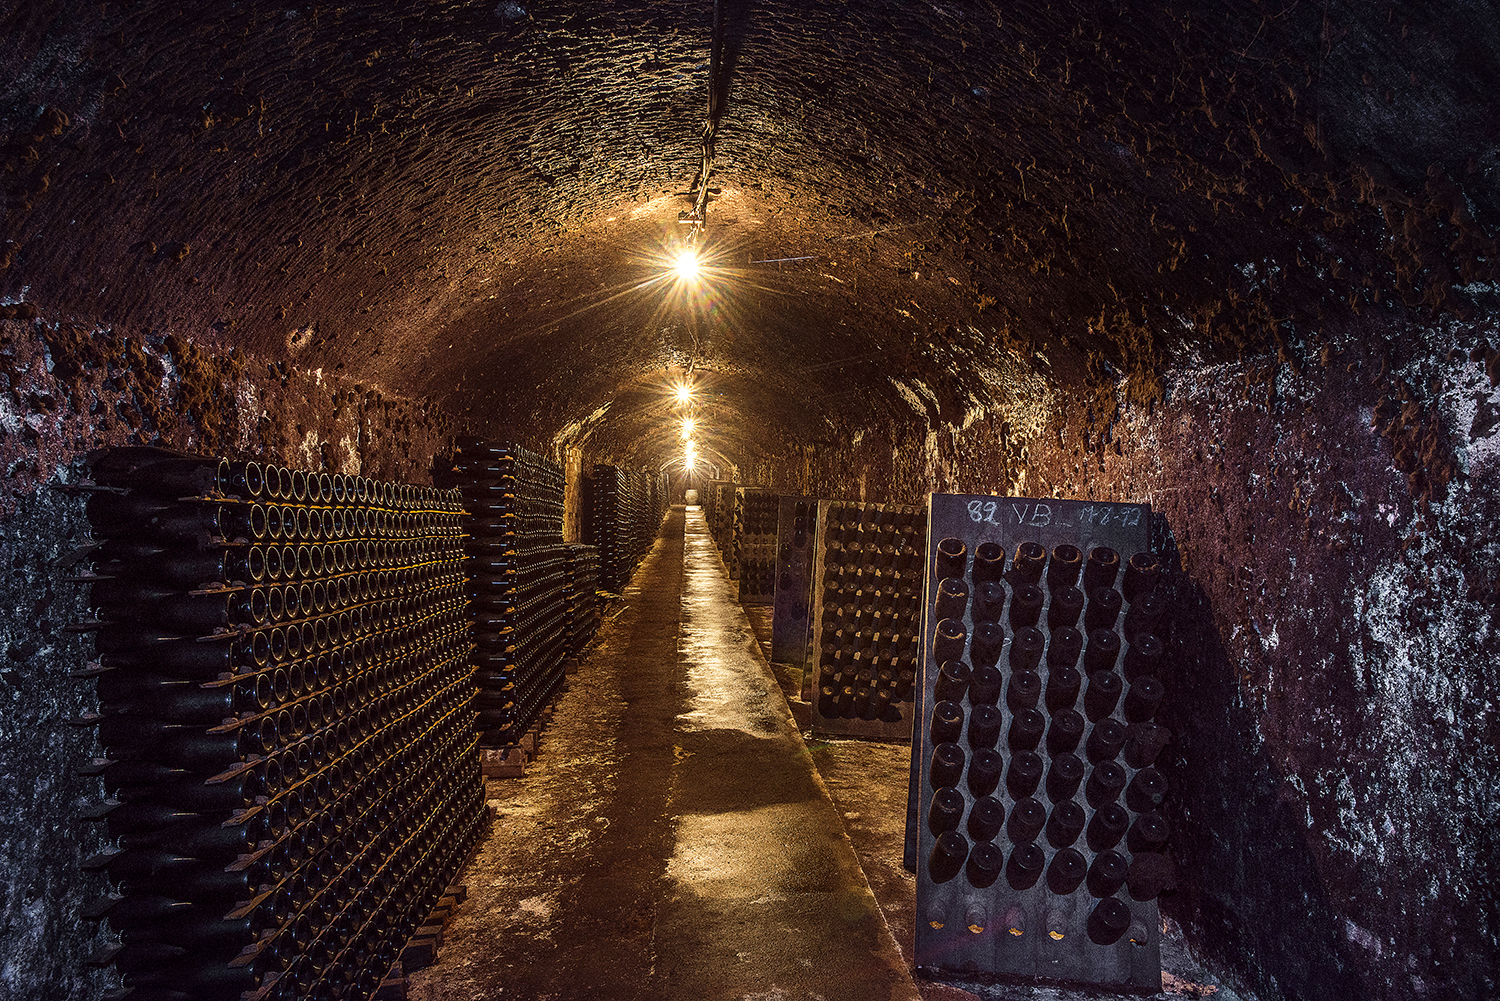 Seppelt Wines Underground Cellar Tour